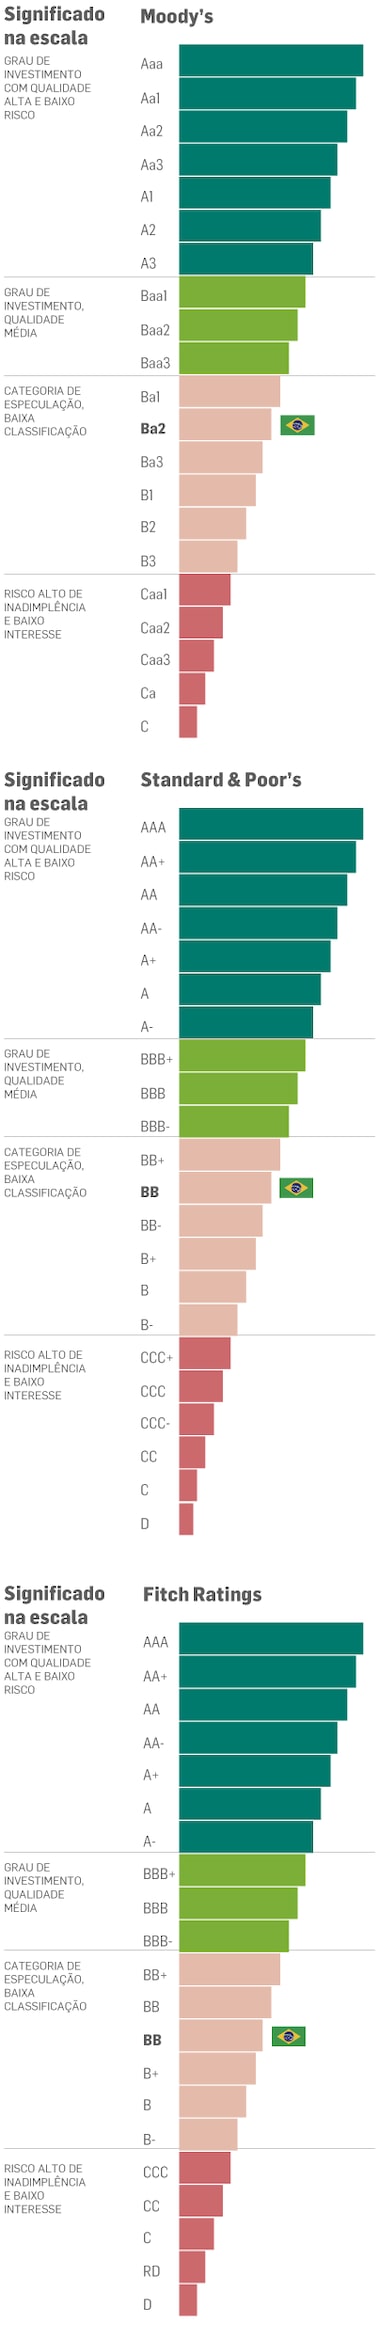 agência moody’s melhora perspectiva da classificação de risco do brasil